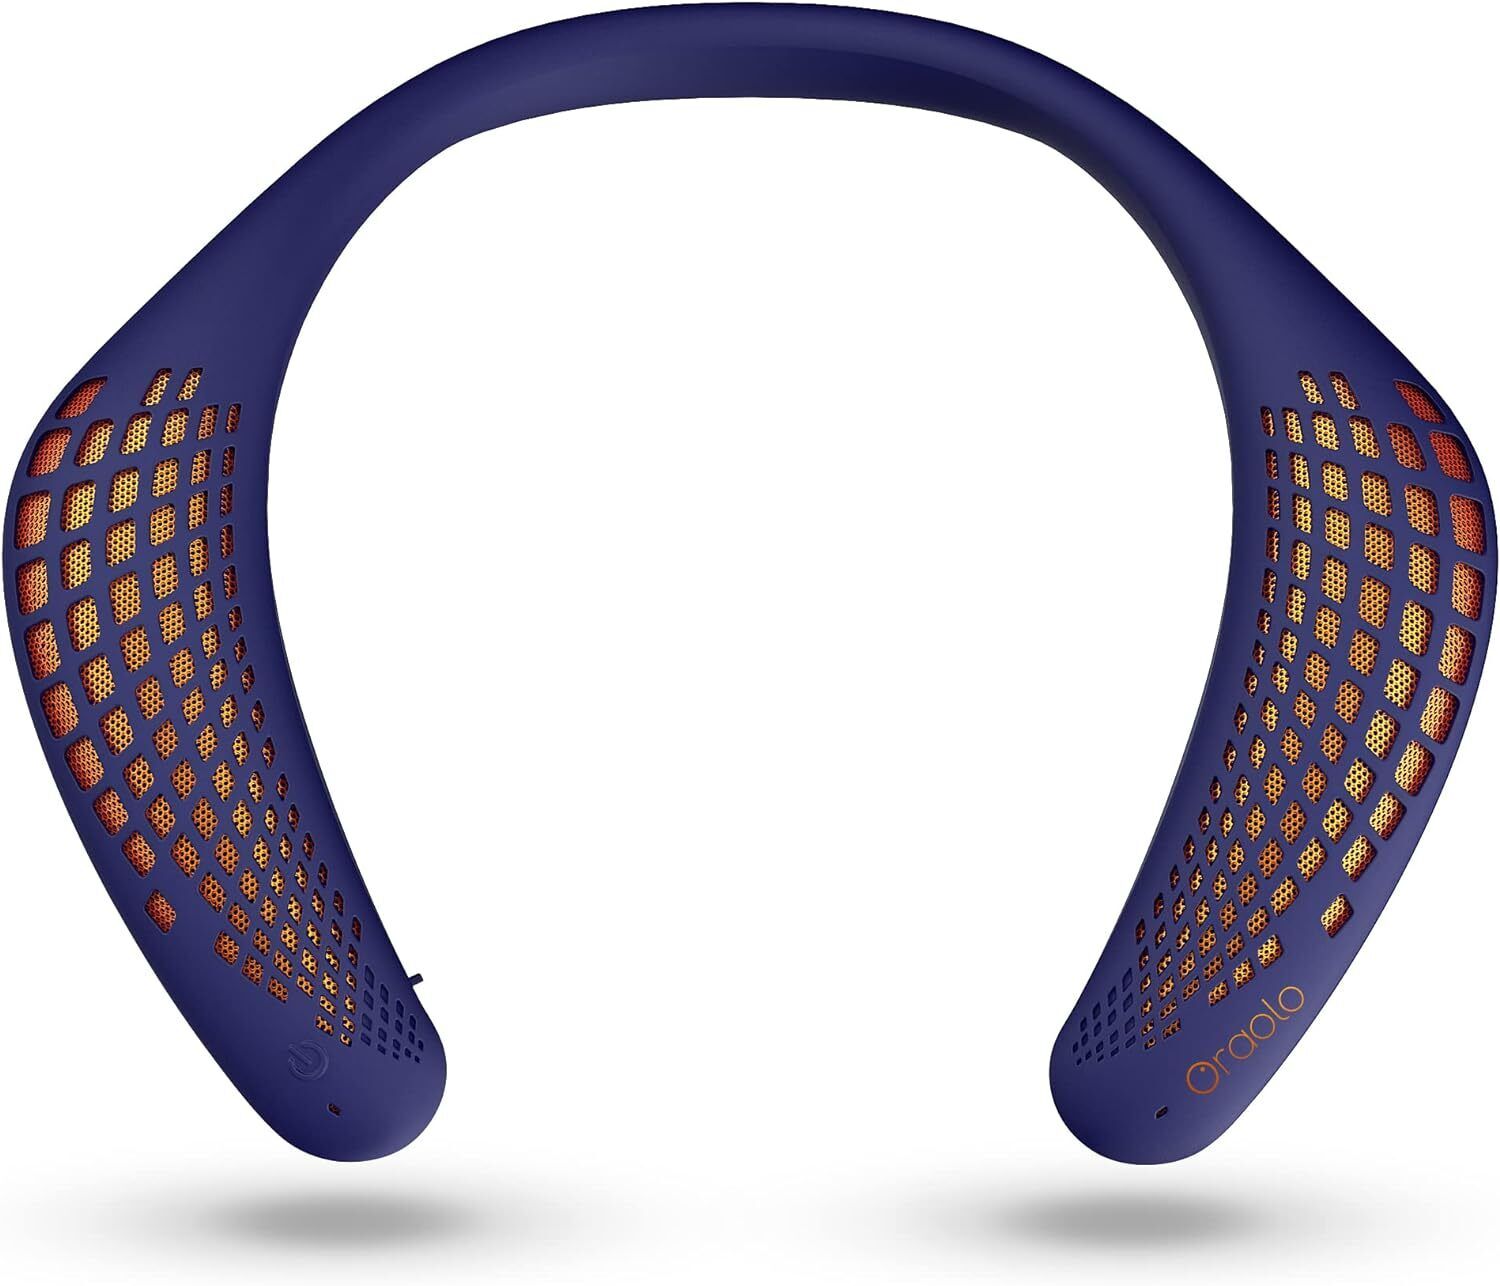 Neckband Bluetooth Speakers, Wireless Wearable Speaker True 3D Stereo Sound